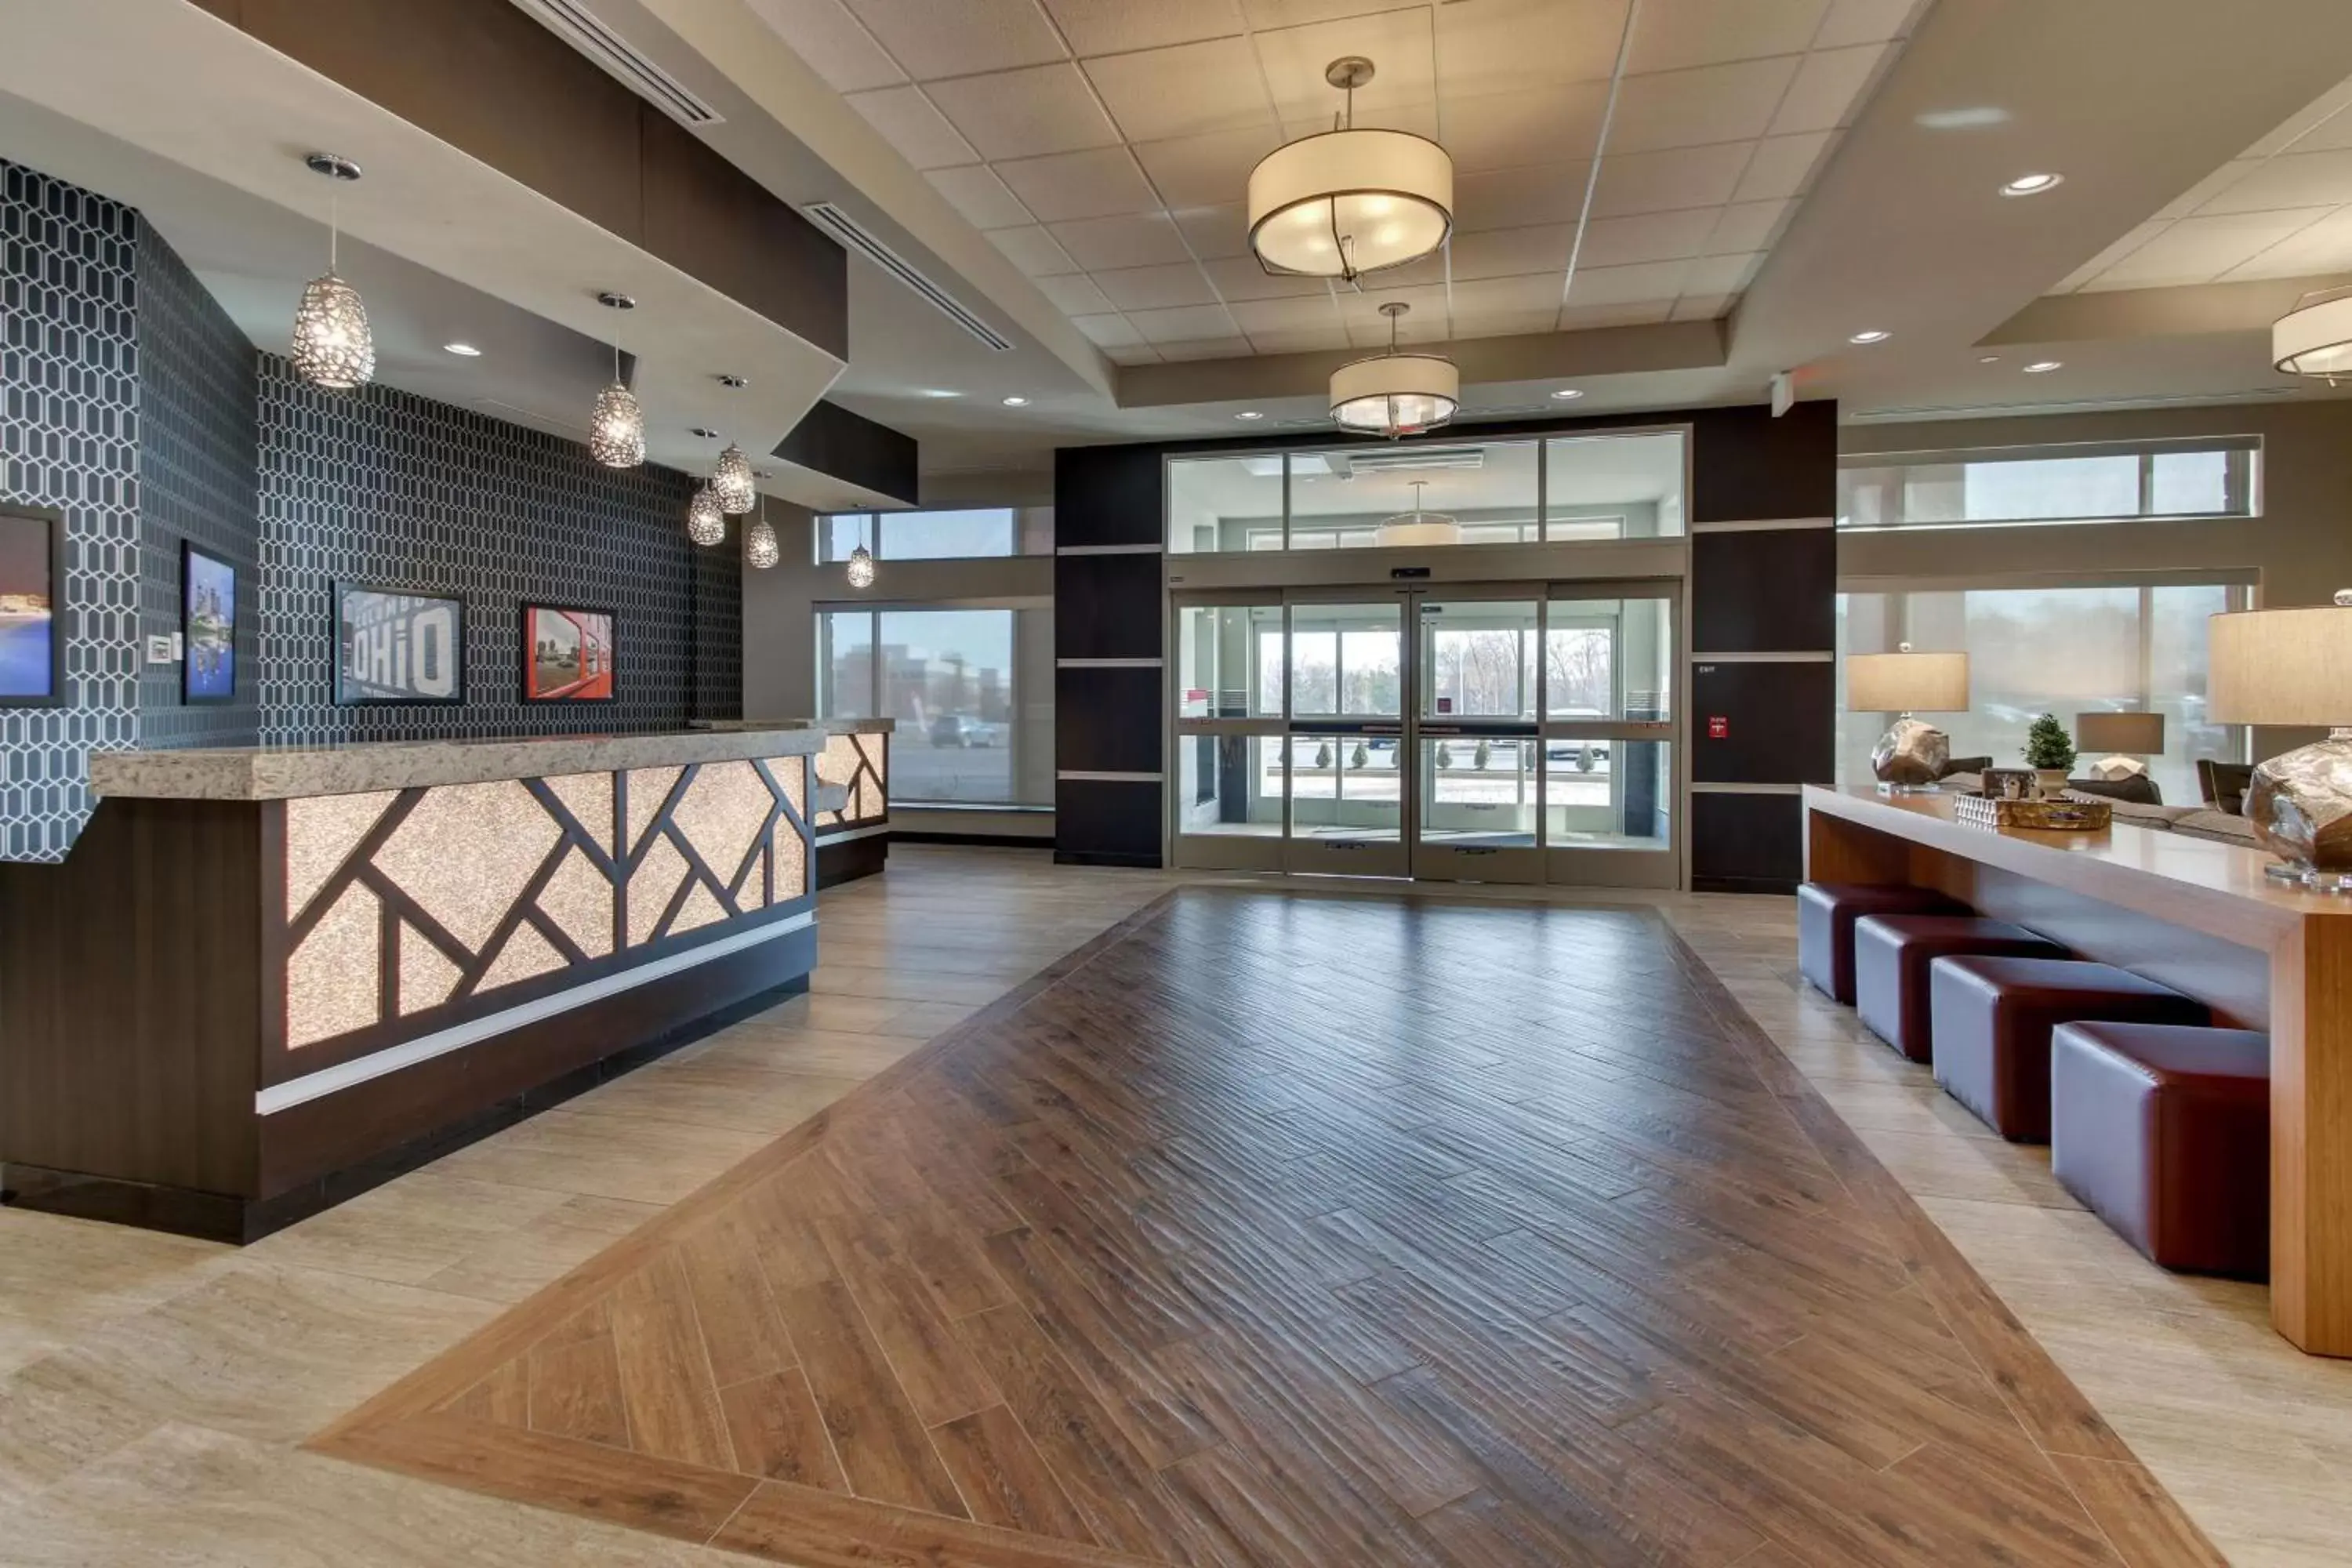 Lobby or reception in Drury Inn & Suites Columbus Polaris